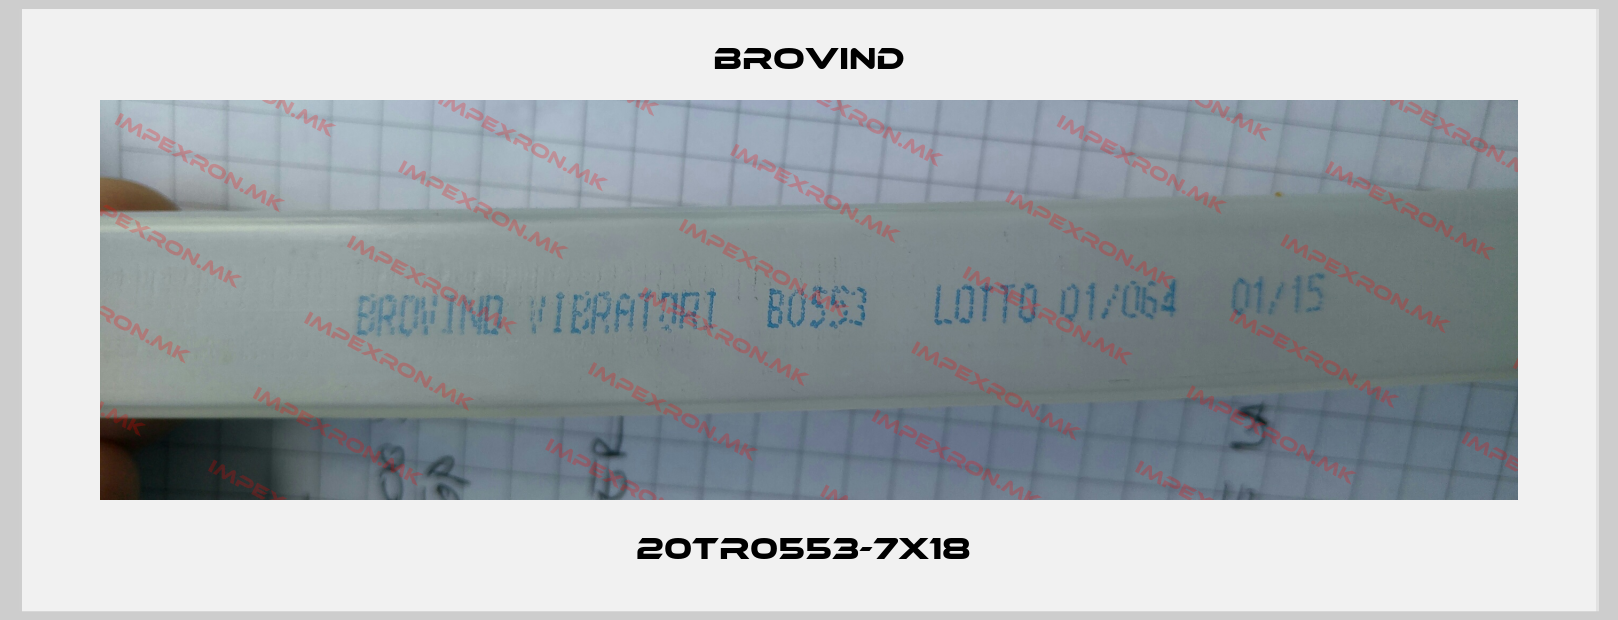 Brovind-20TR0553-7X18 price